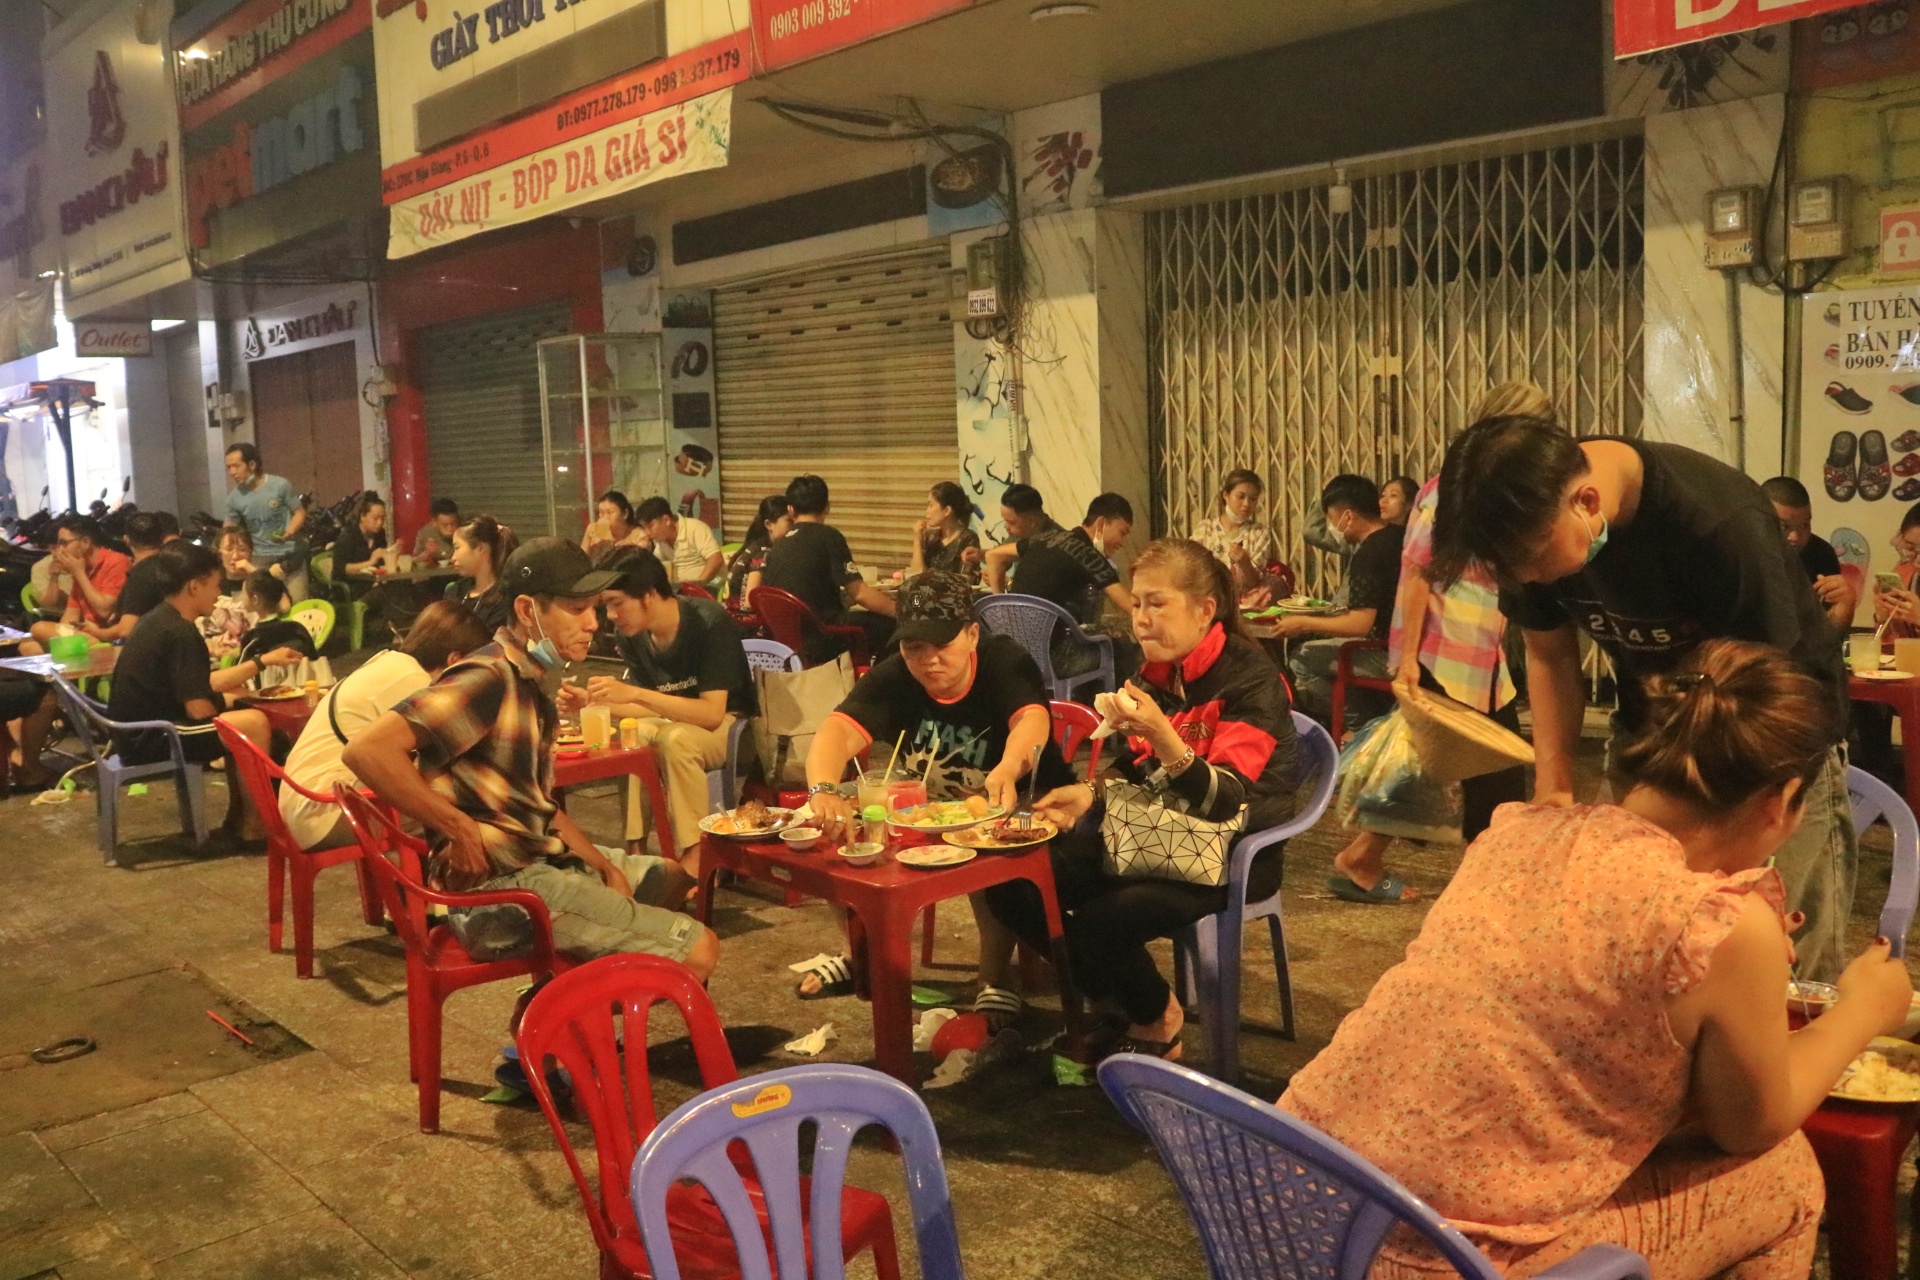 Cơm tấm đêm là món ăn thường ngon và đáng thử khi du lịch đến Sài Gòn. Với cơm nóng hổi, thịt heo kho thơm ngon, chả trứng và dưa leo, cơm tấm đêm là gợi ý hoàn hảo cho những người yêu thích ẩm thực đêm. Hãy thưởng thức trọn vẹn trải nghiệm này ở Sài Gòn.